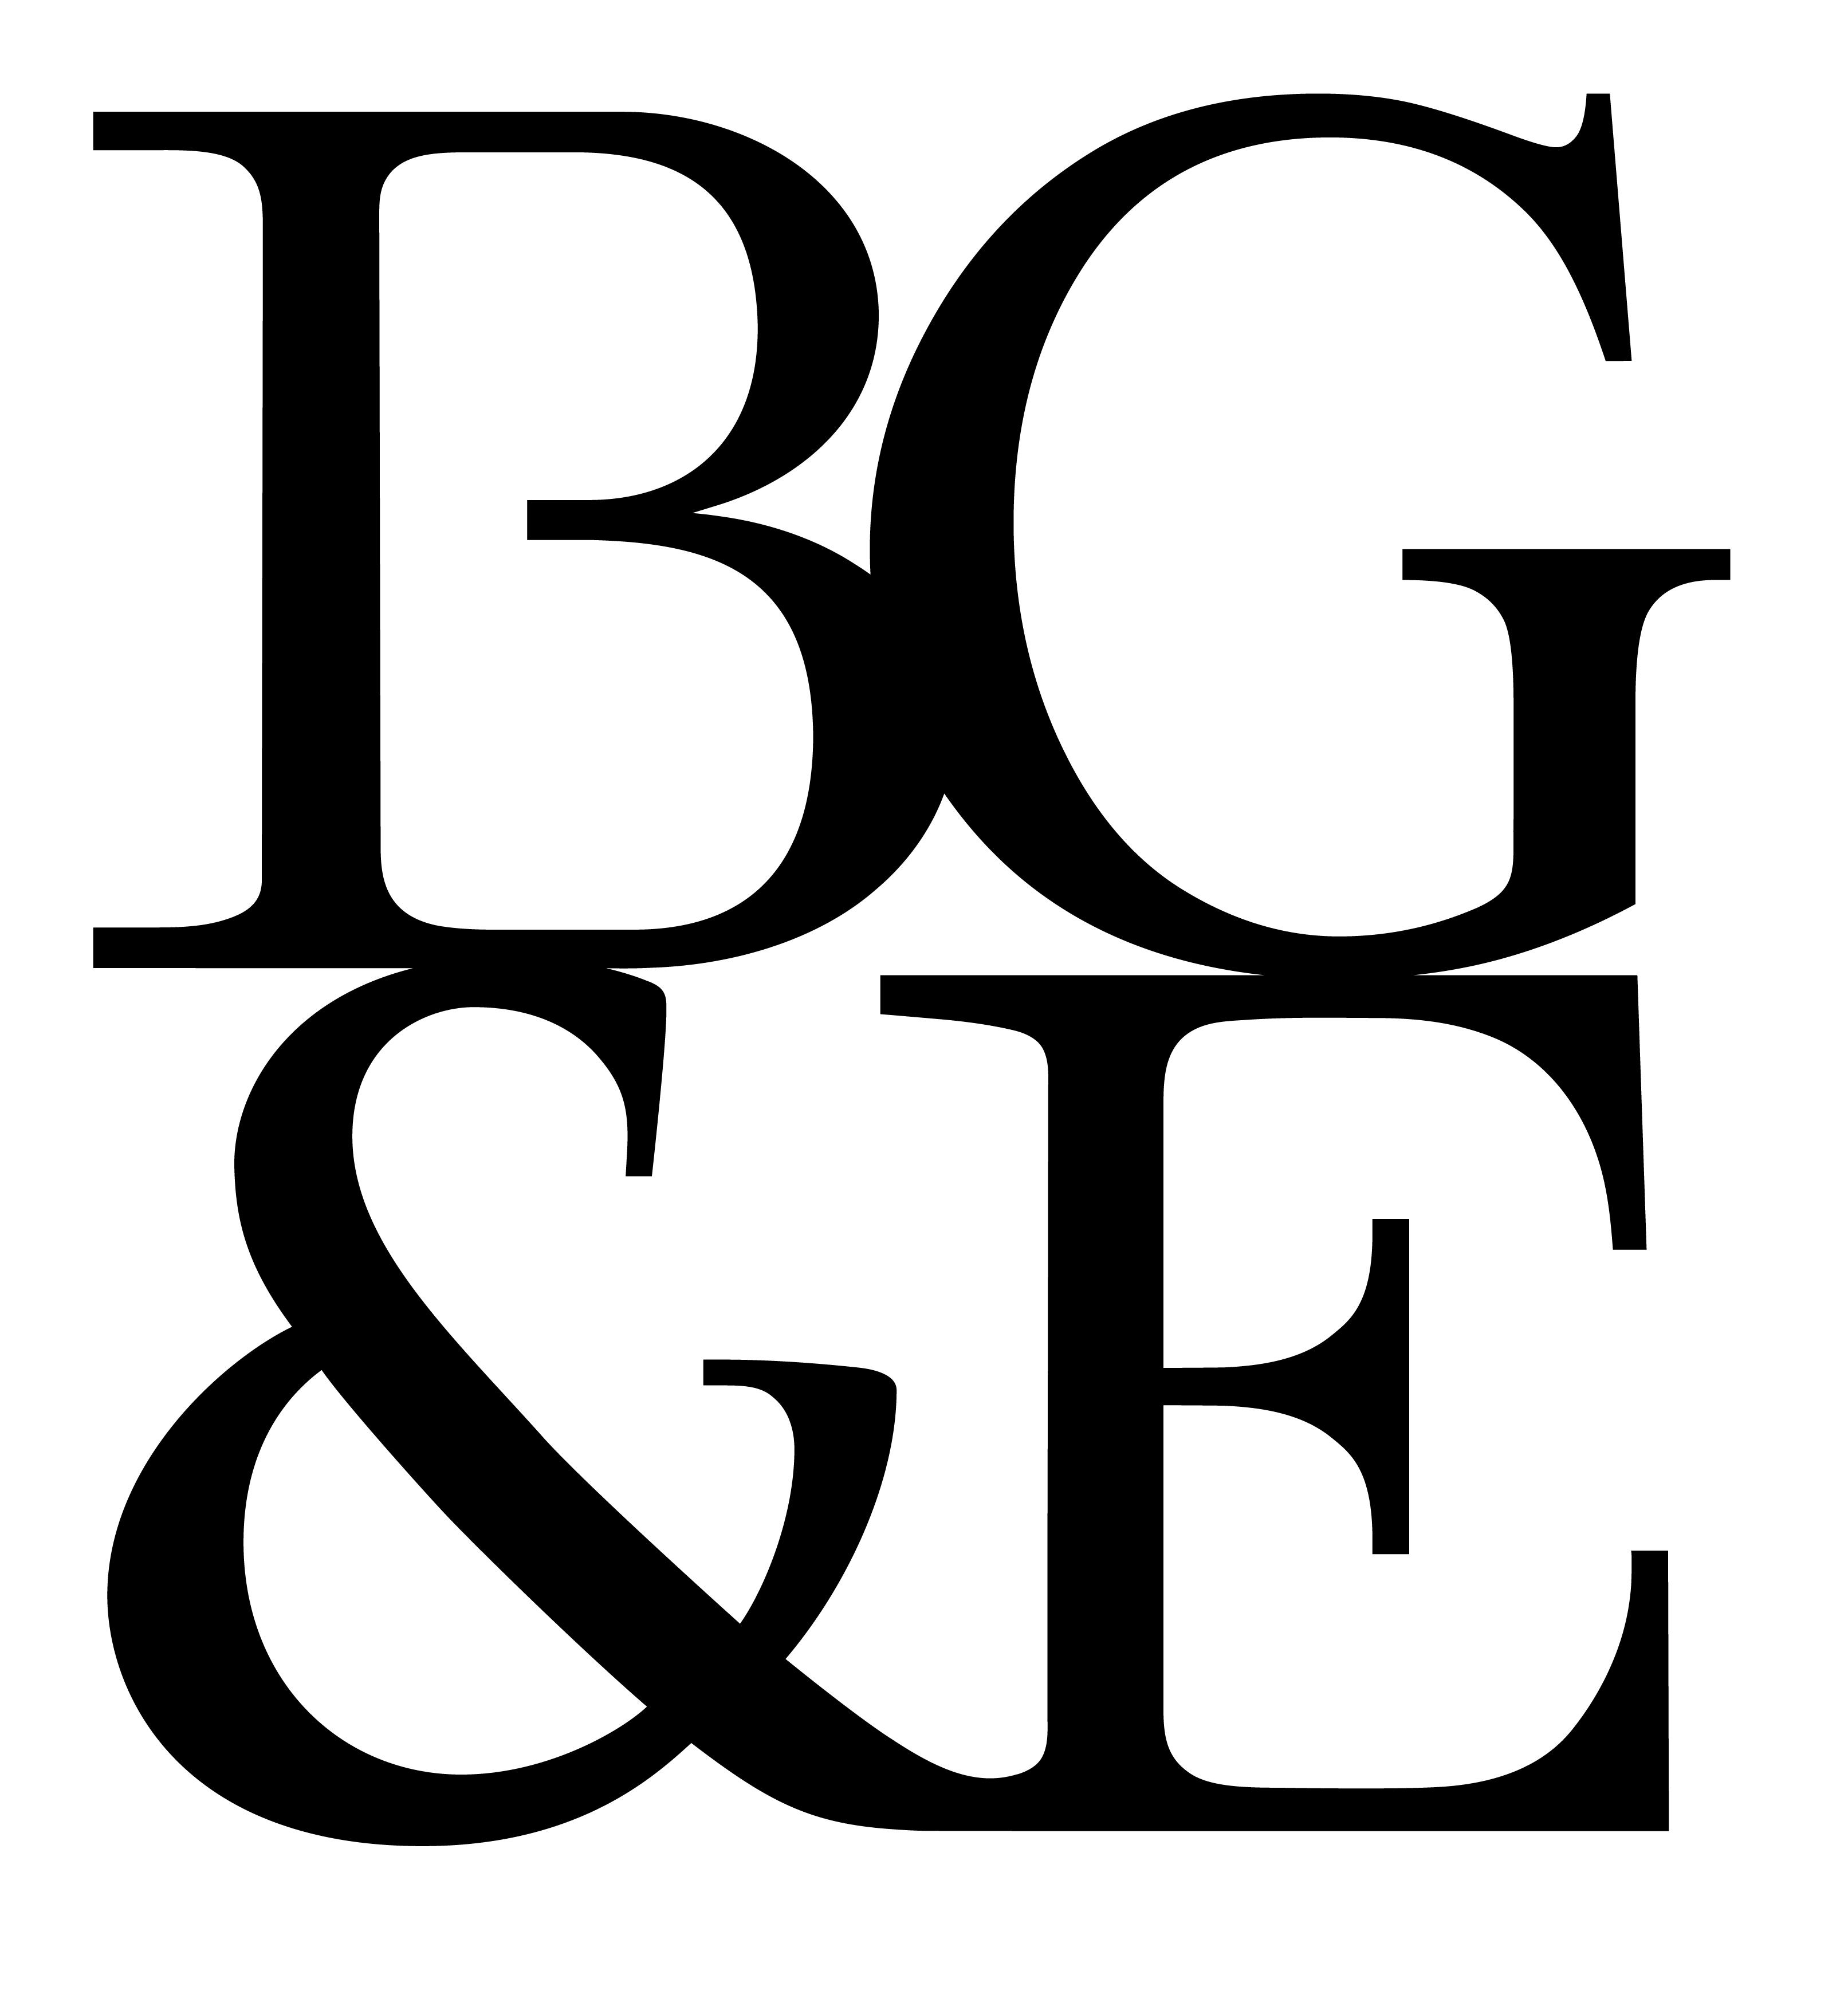 BG&E